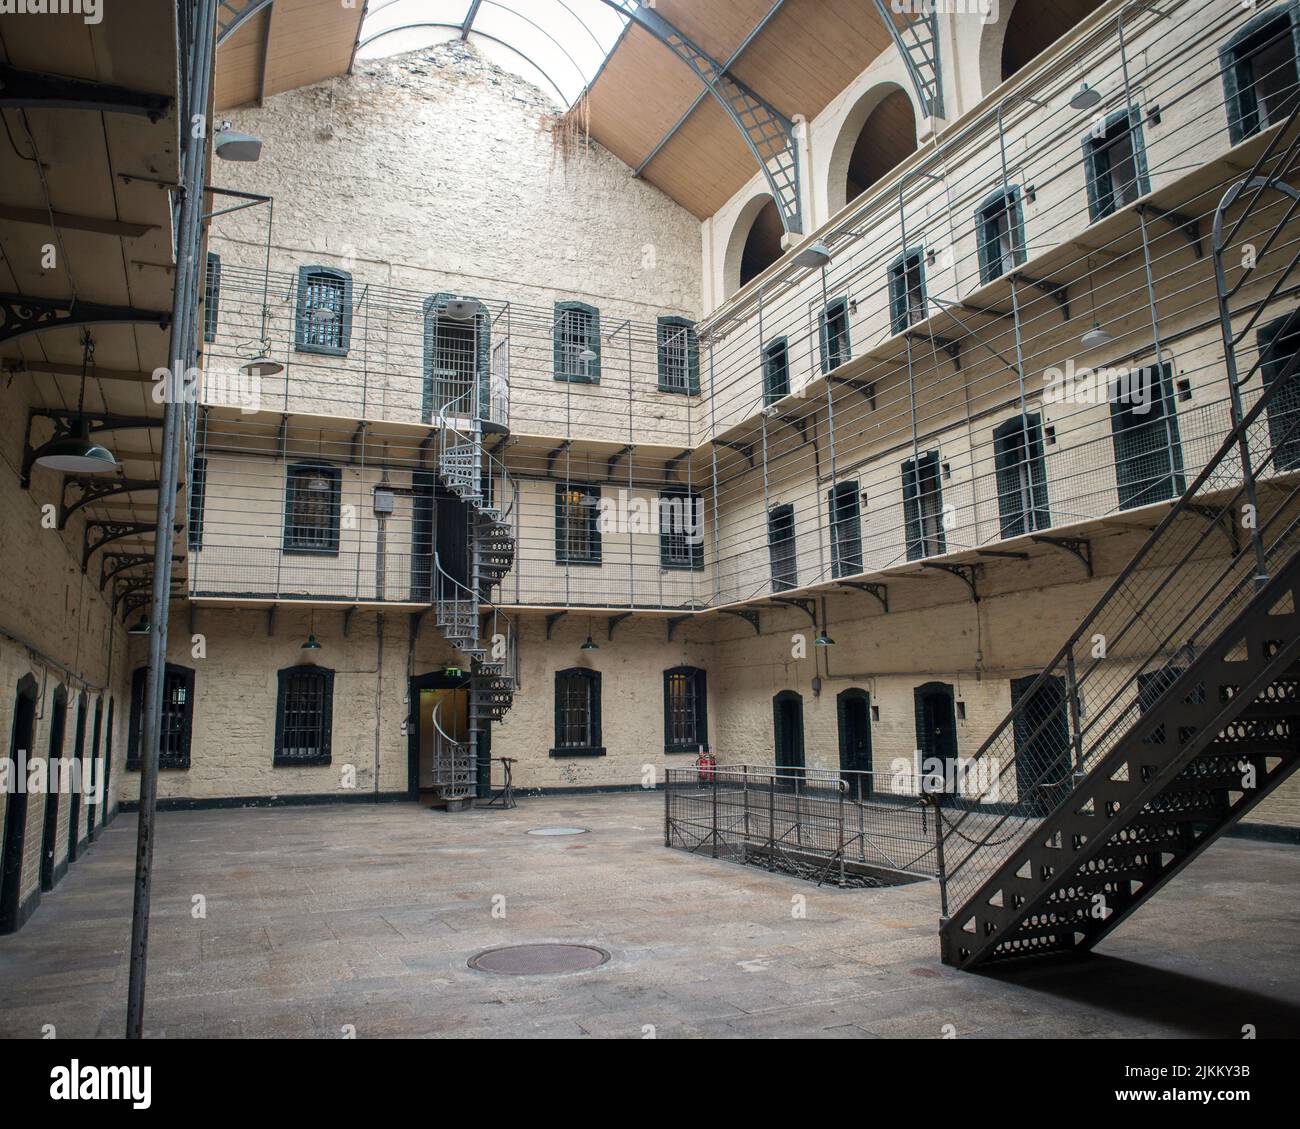 Das Gefängnis von Kilmainham in Kilmainham, Dublin, wo viele irische republikanische revolutionäre inhaftiert und hingerichtet wurden. Stockfoto